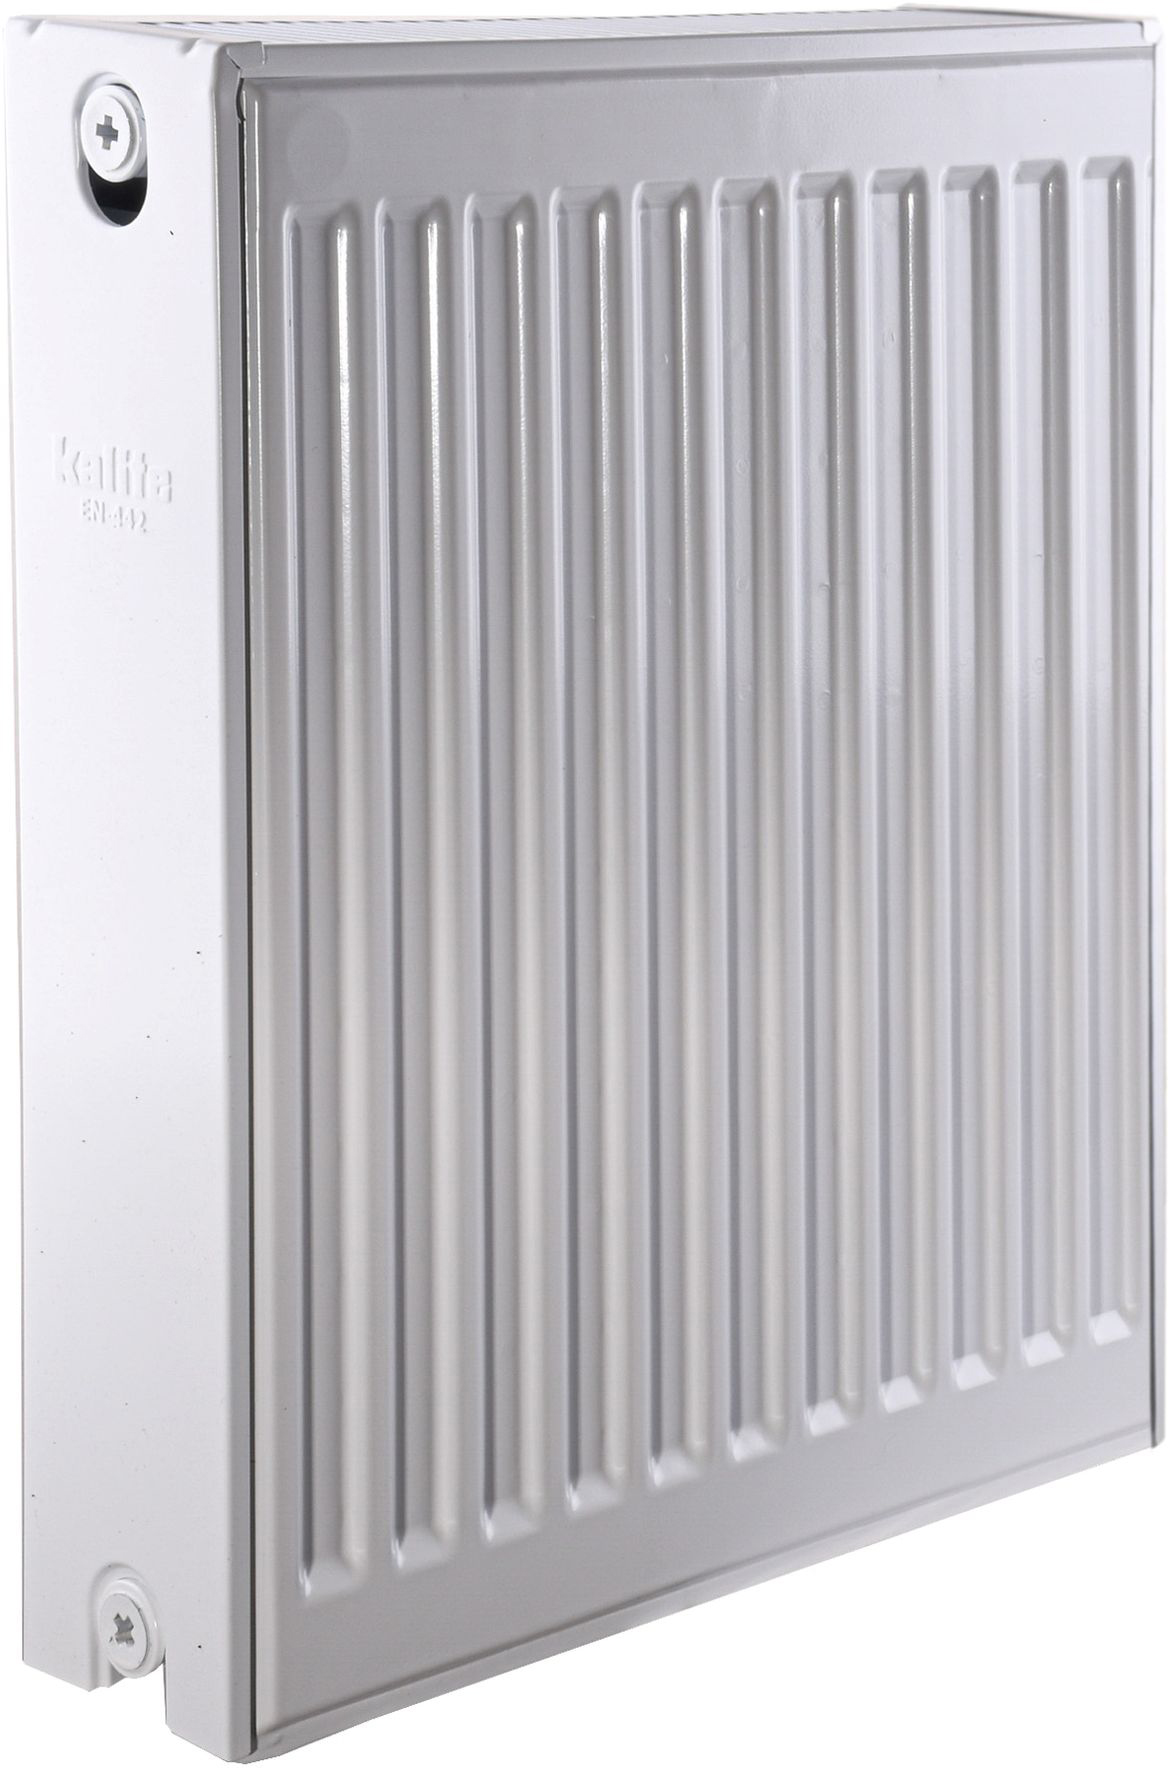 Радиатор для отопления Kalite 22 бок 500x400